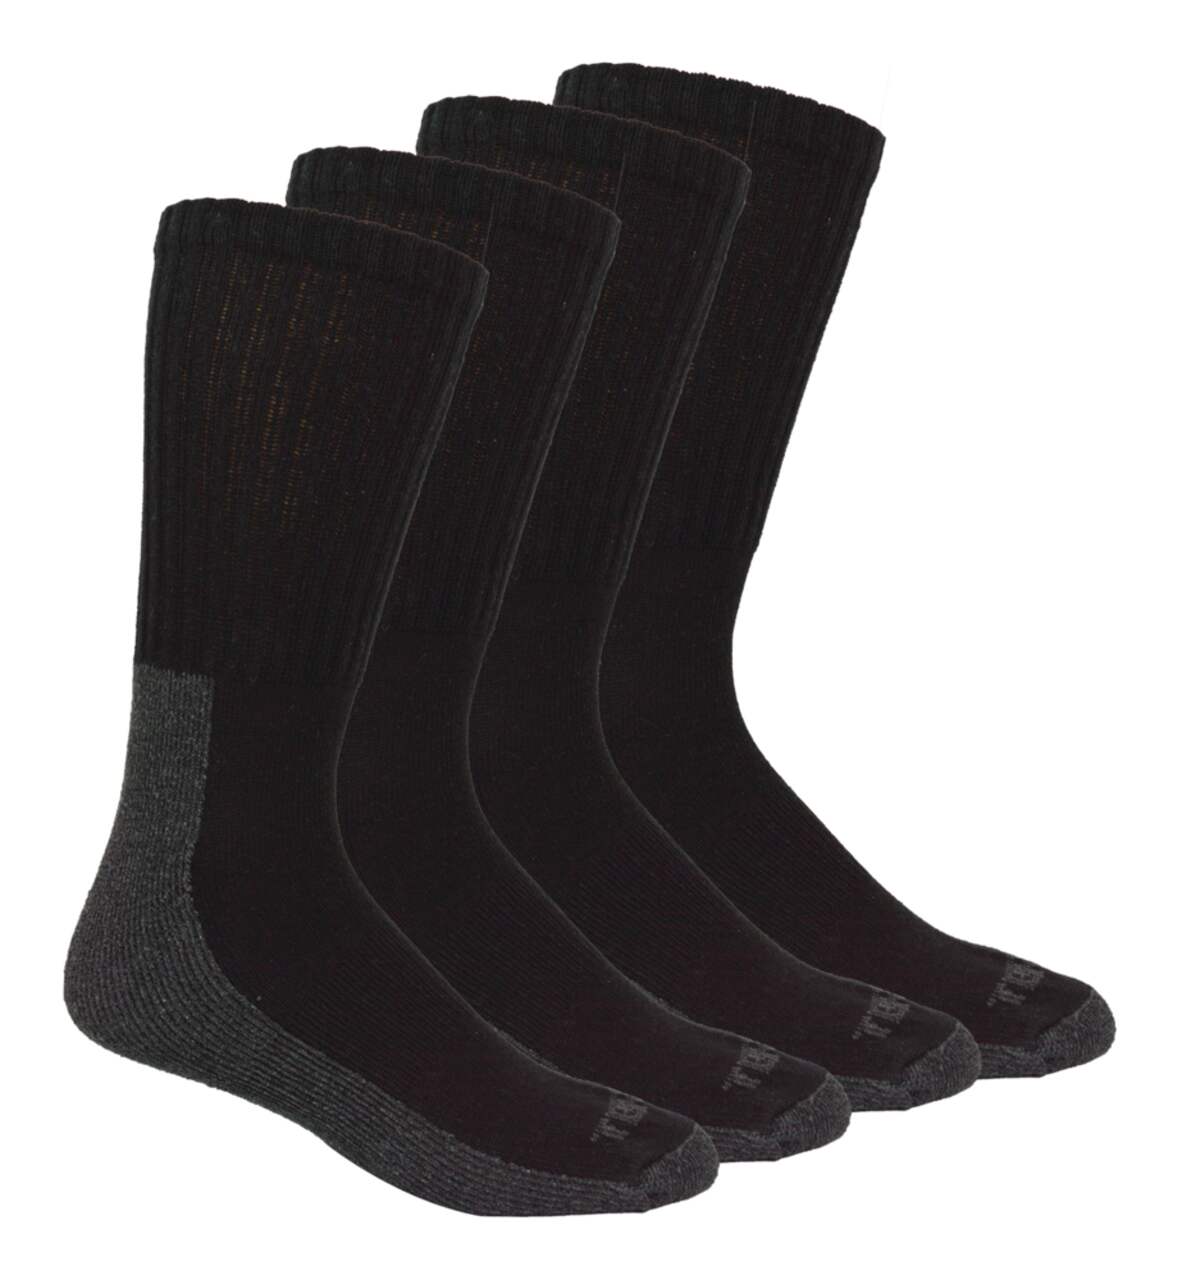 Terra Men's Steel Toe Breathable Work Socks, Fully Cushioned for Comfort,  4-pk, Black